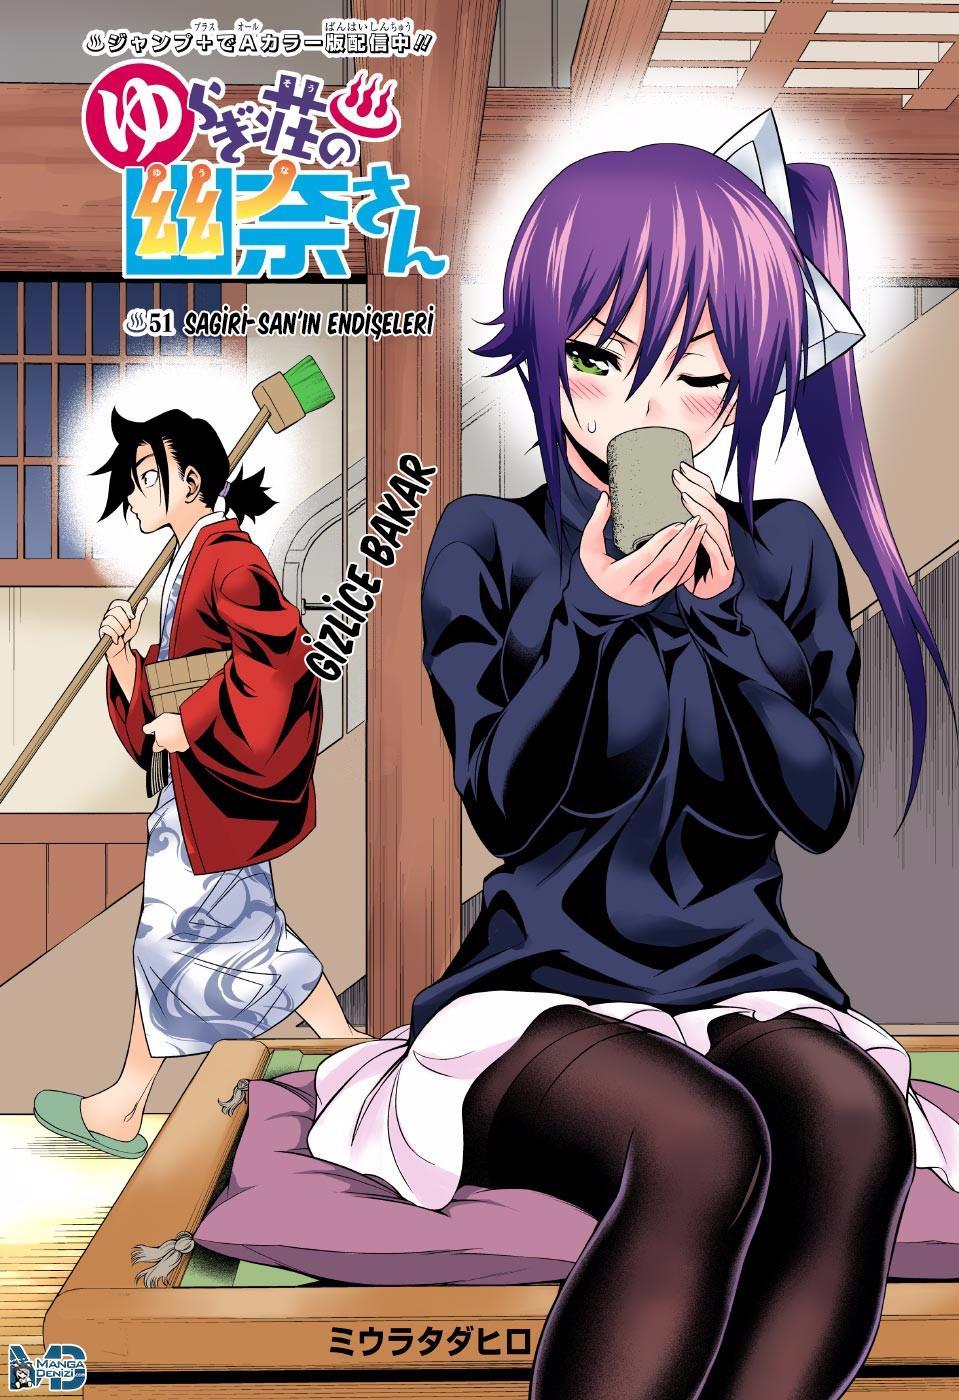 Yuragi-sou no Yuuna-san mangasının 051 bölümünün 2. sayfasını okuyorsunuz.